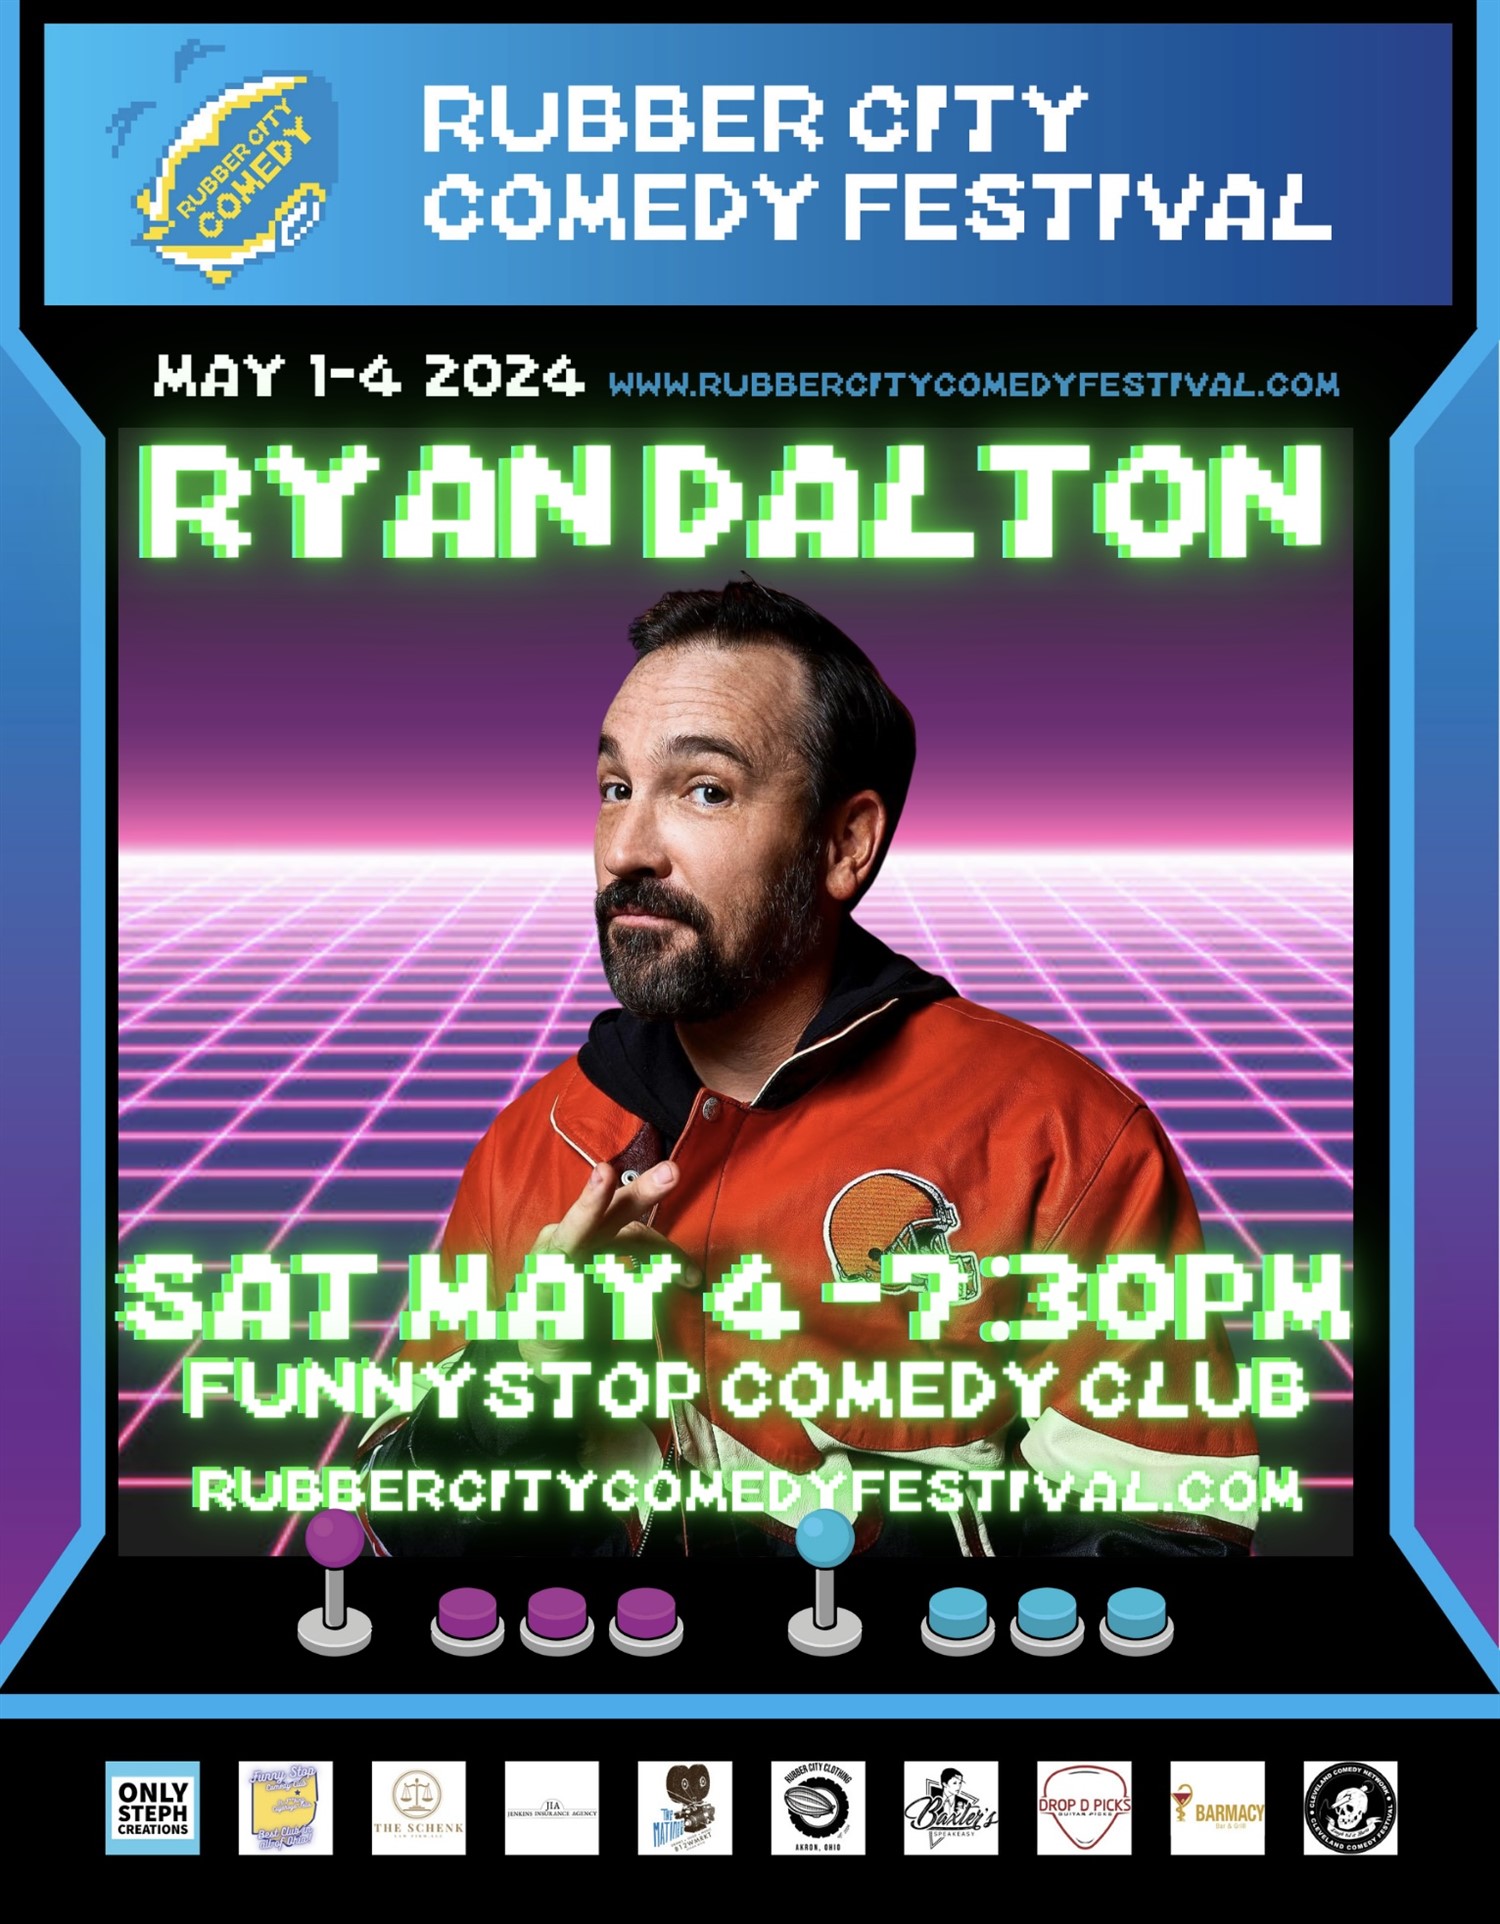 Ryan Dalton | 7:30 PM | Rubber City Comedy Festival Funny Stop Comedy Club on mai 04, 19:30@Funny Stop Comedy Club - Achetez des billets et obtenez des informations surFunny Stop funnystop.online